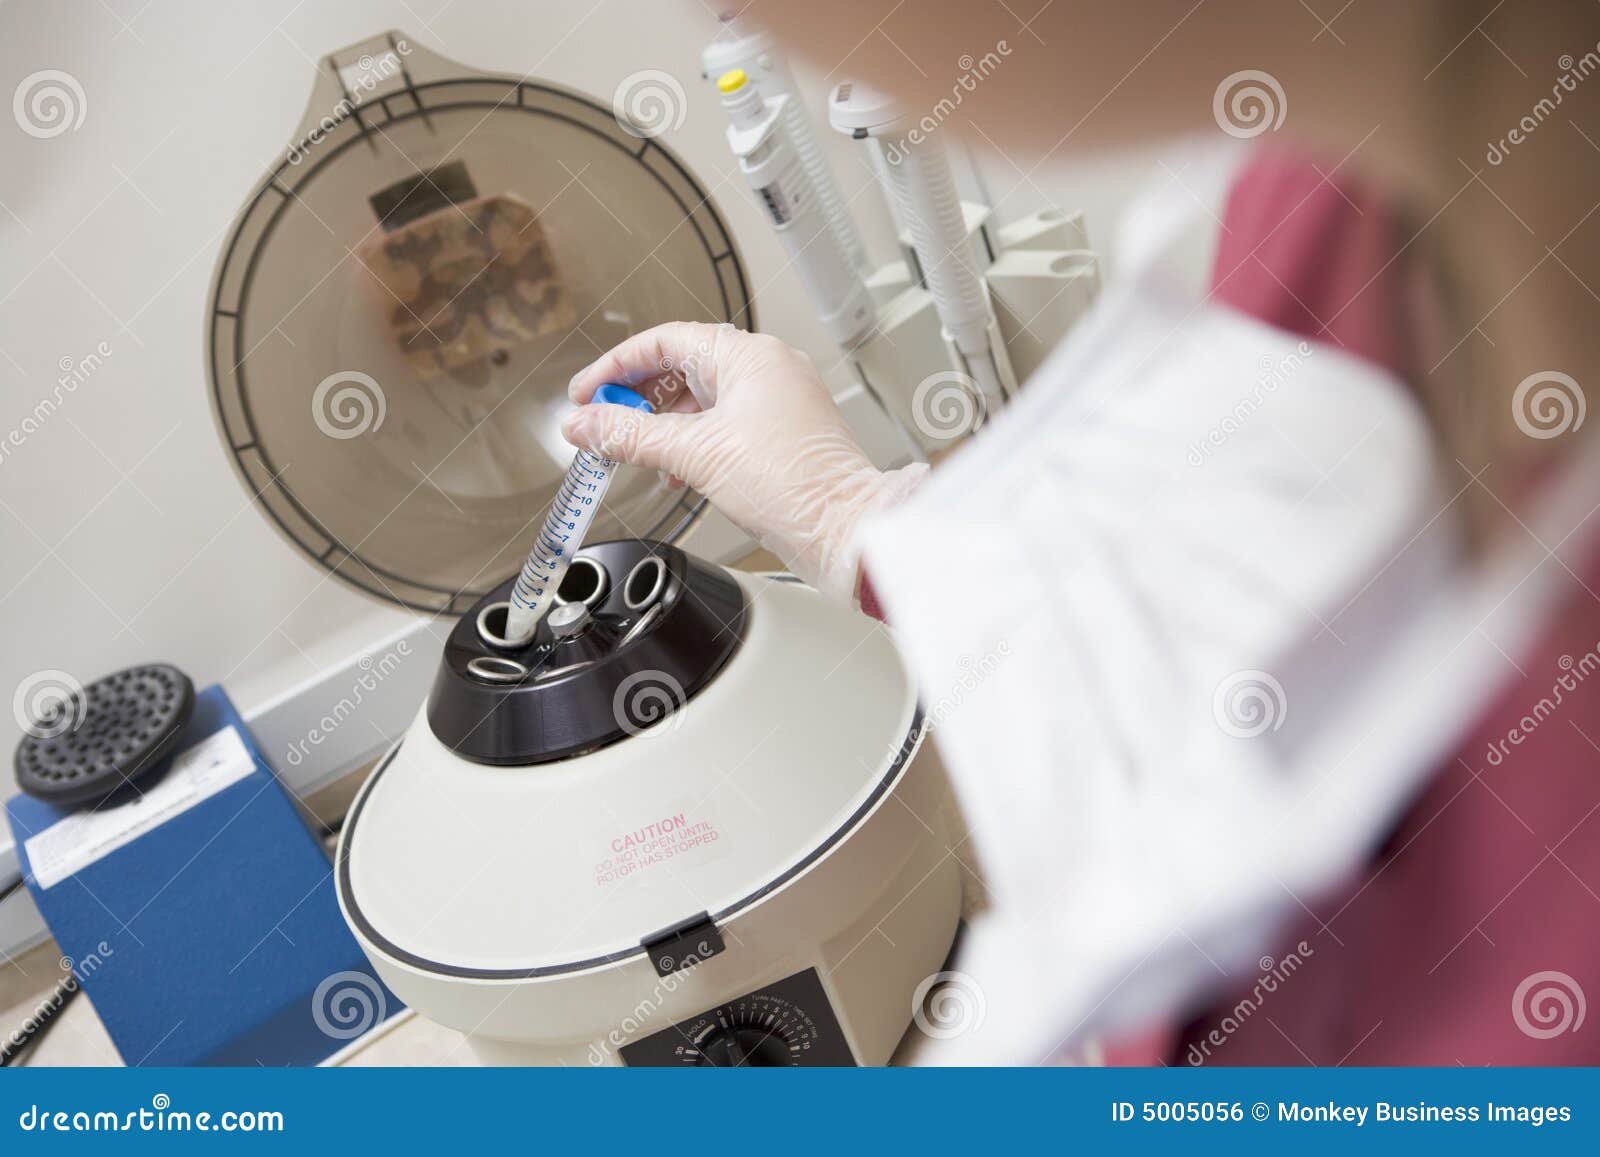 embryologist putting sample into centrifuge